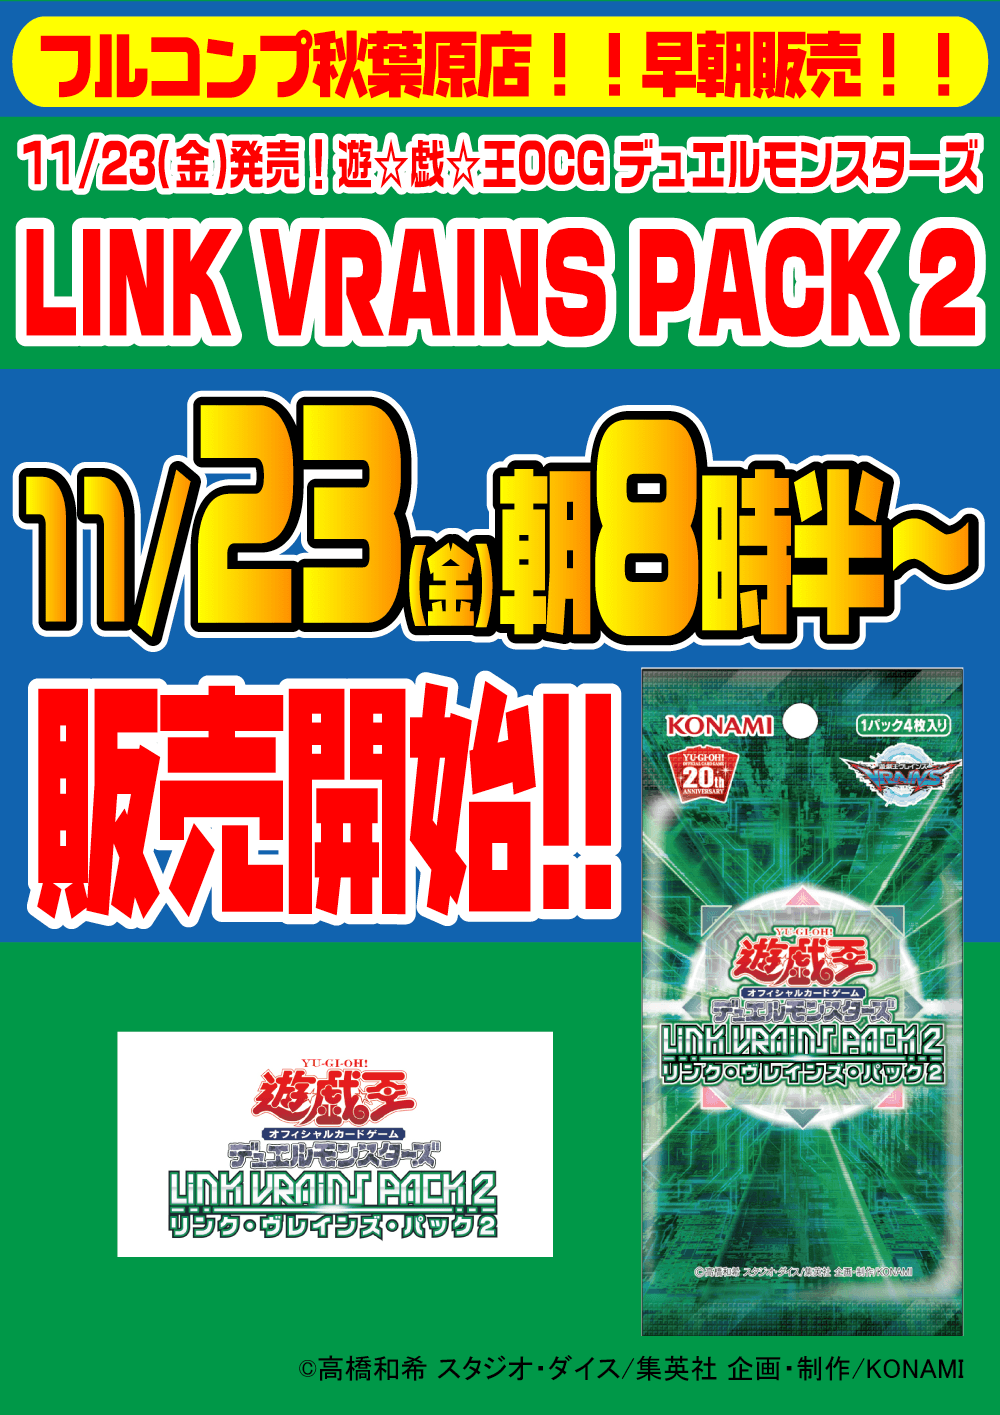 遊戯王OCG デュエルモンスターズ「LINK VRAINS PACK 2 -リンク・ヴレインズ・パック２-」早朝販売